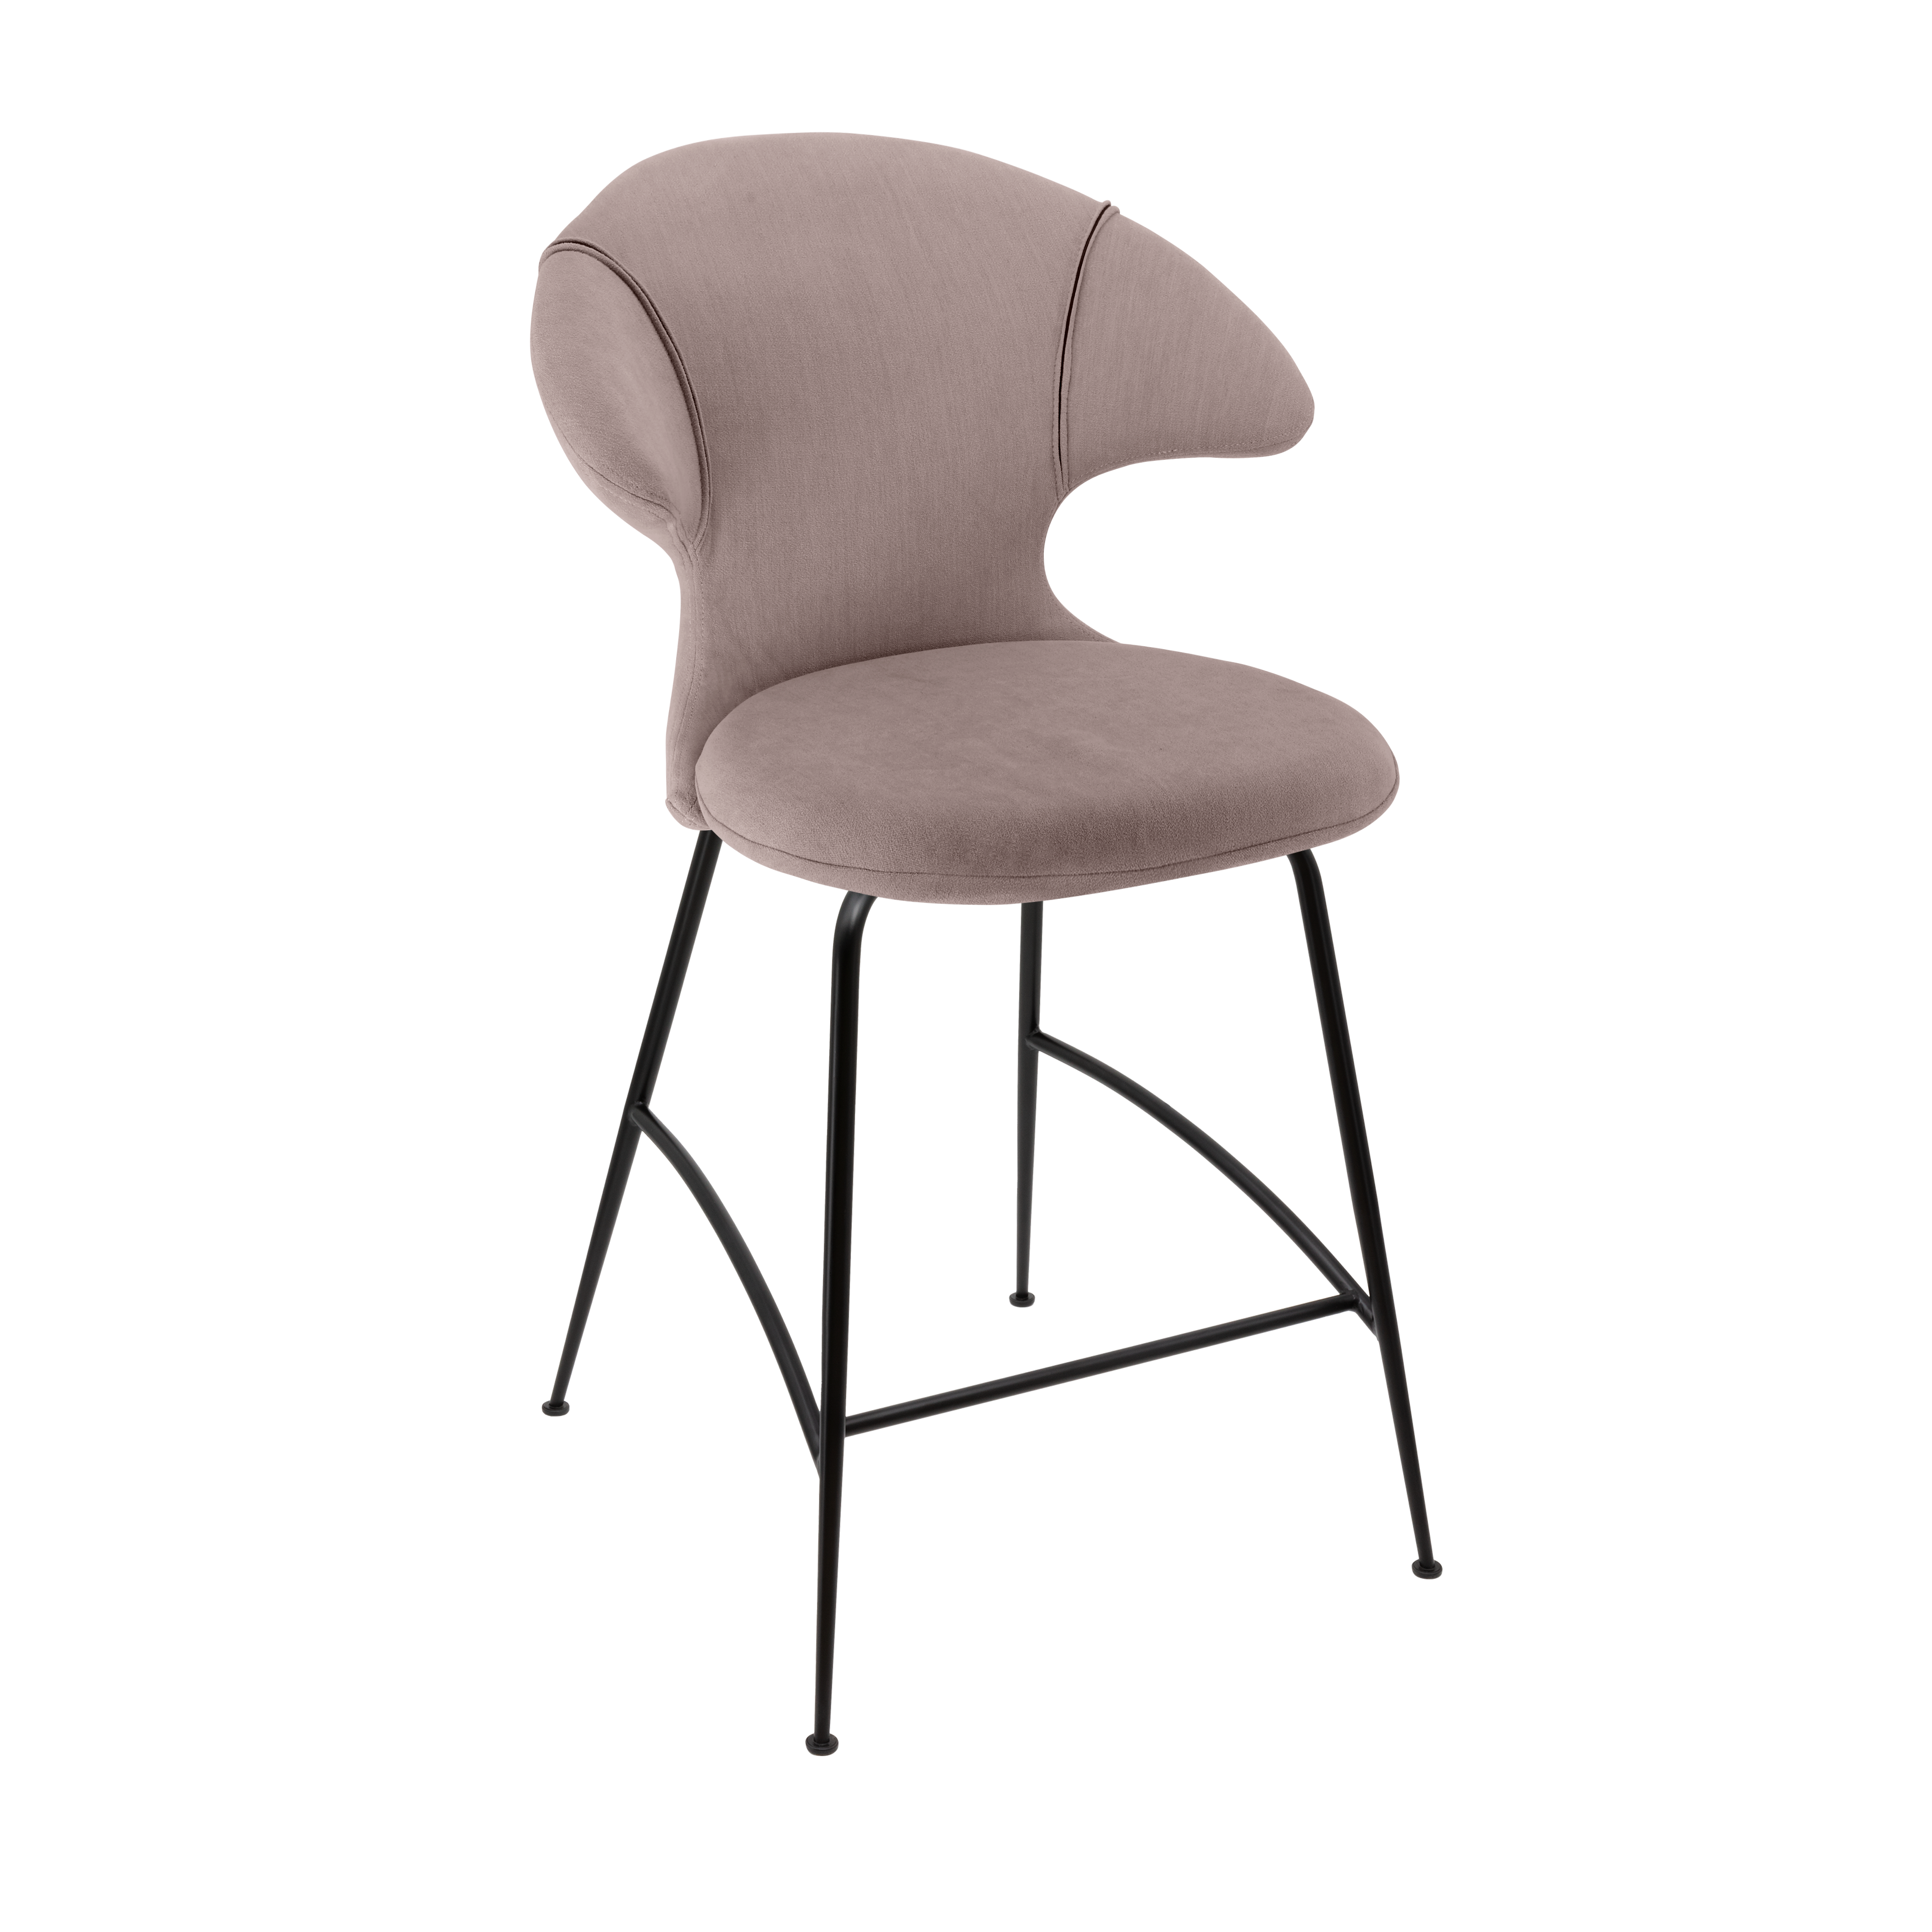 Time Flies Counter Stuhl in Monrose präsentiert im Onlineshop von KAQTU Design AG. Barstuhl mit Armlehne ist von Umage